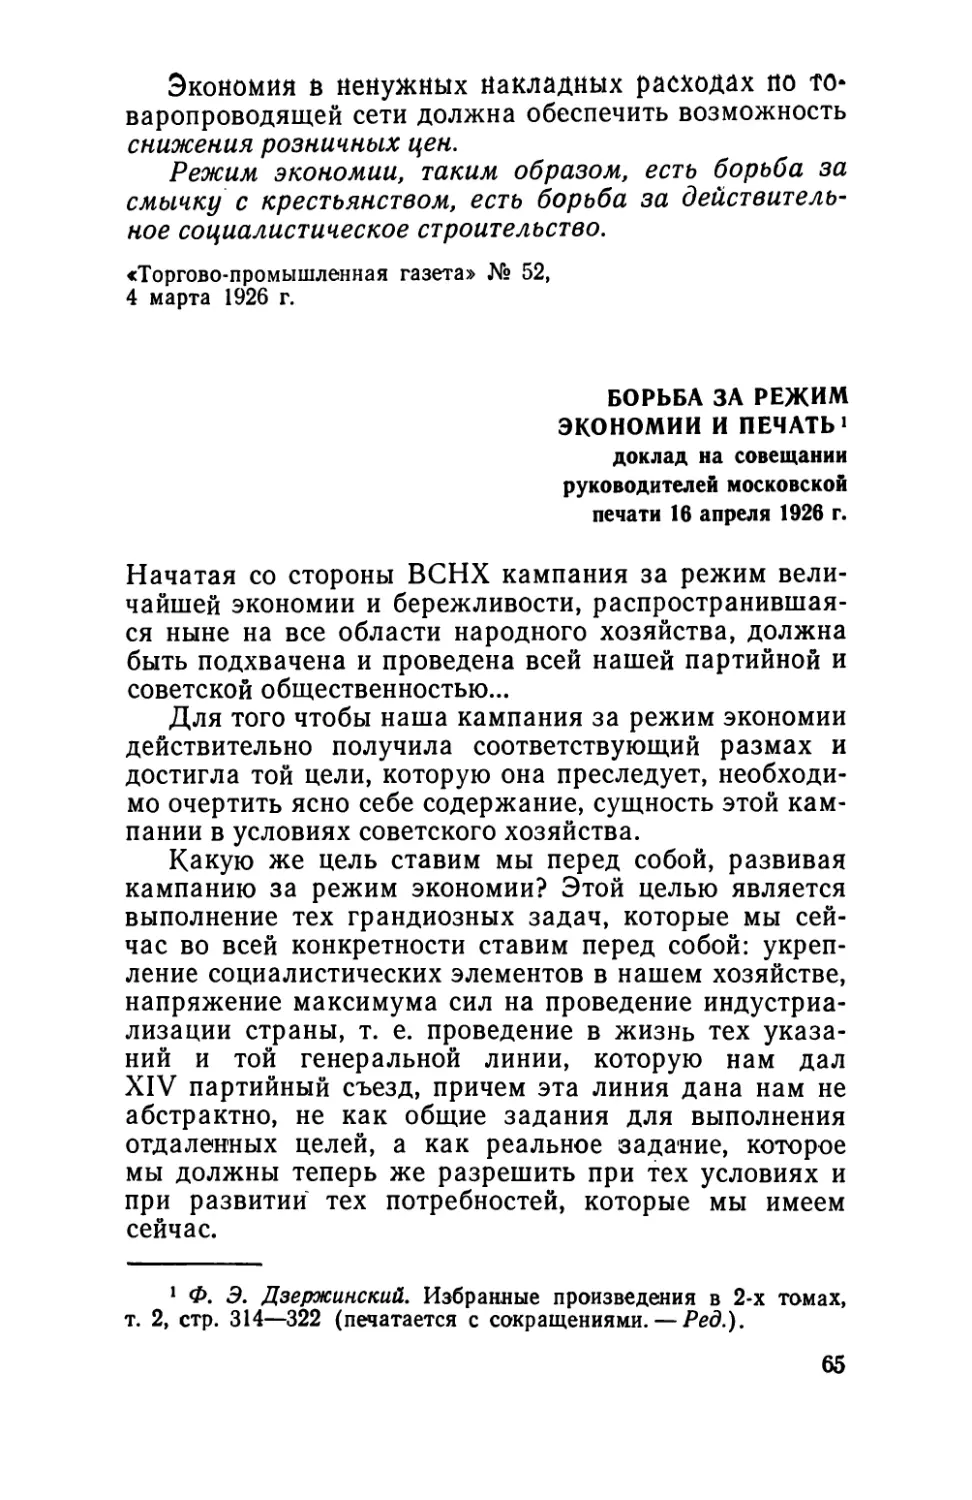 Борьба за режим экономии и печать. Доклад на совещании руководителей московской печати 16 апреля 1926 г.